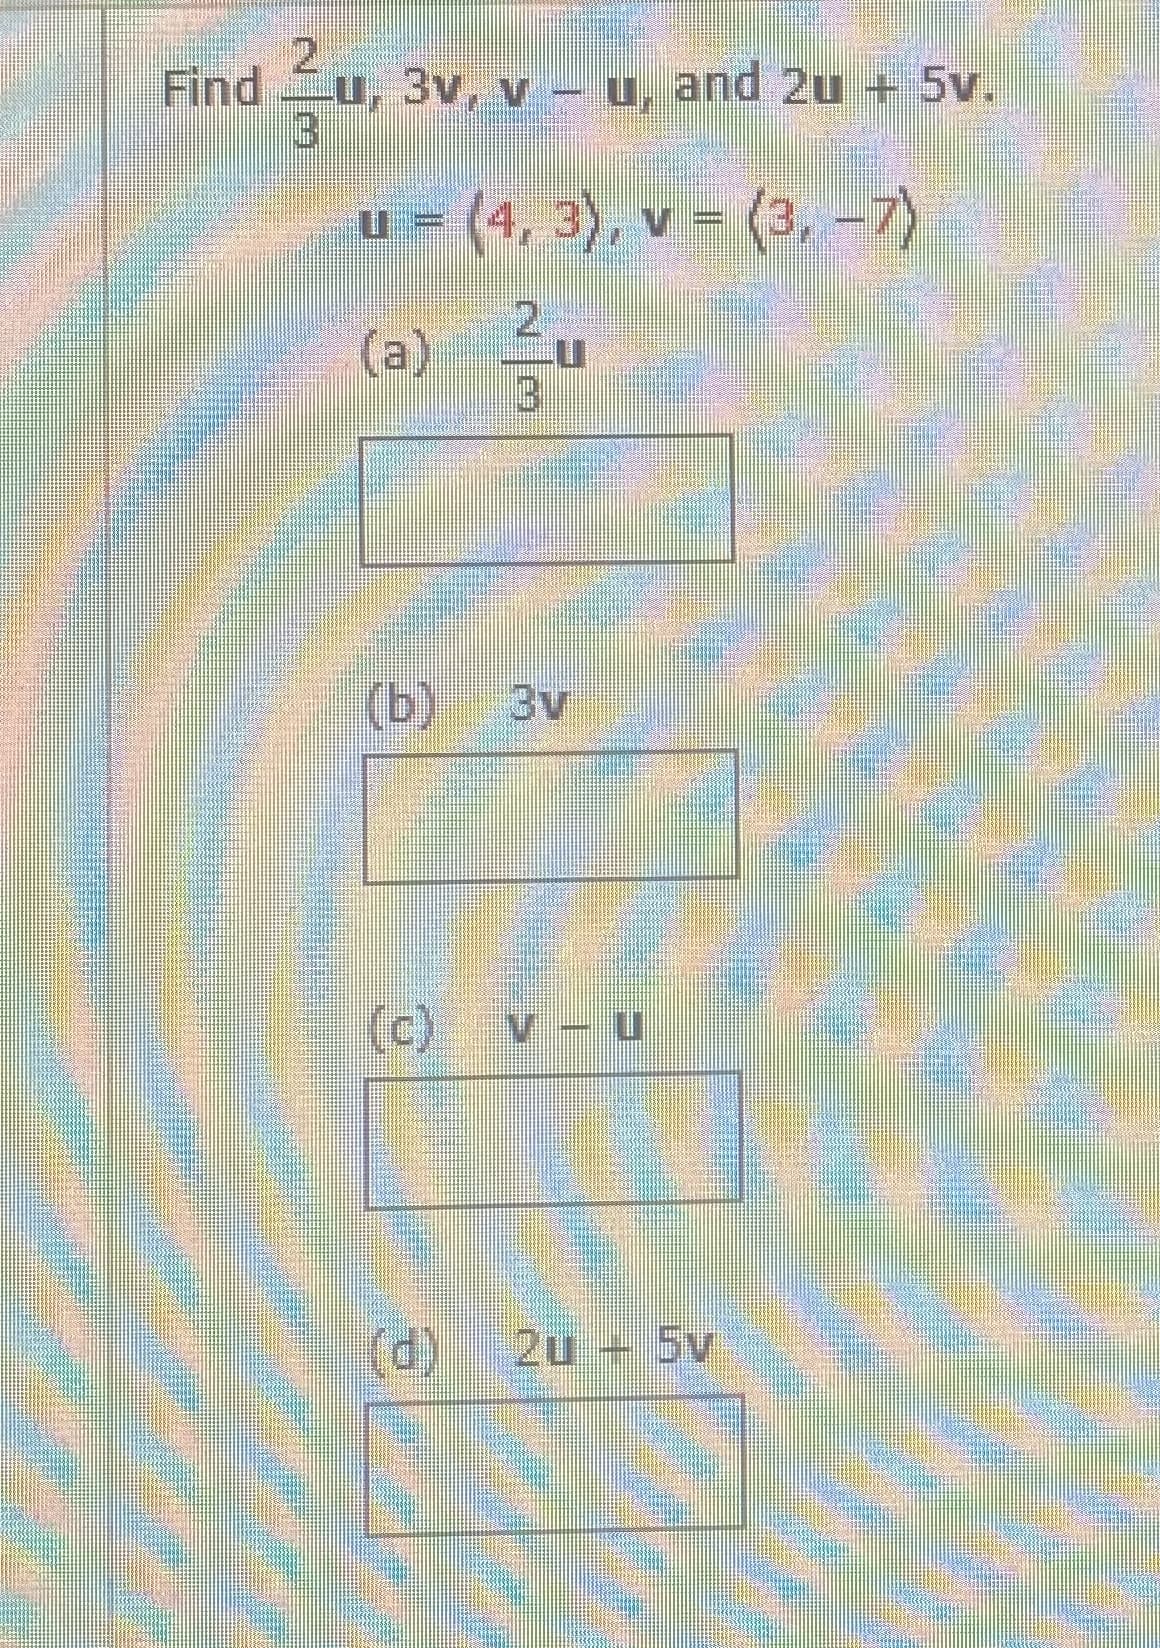 2.
Find
u, 3v, v - u, and 2u + 5v.
u = (4, 3), v = (3, -7)
(a) u
券
(b)
3v
(c) v - u
(d)
2u + 5v
